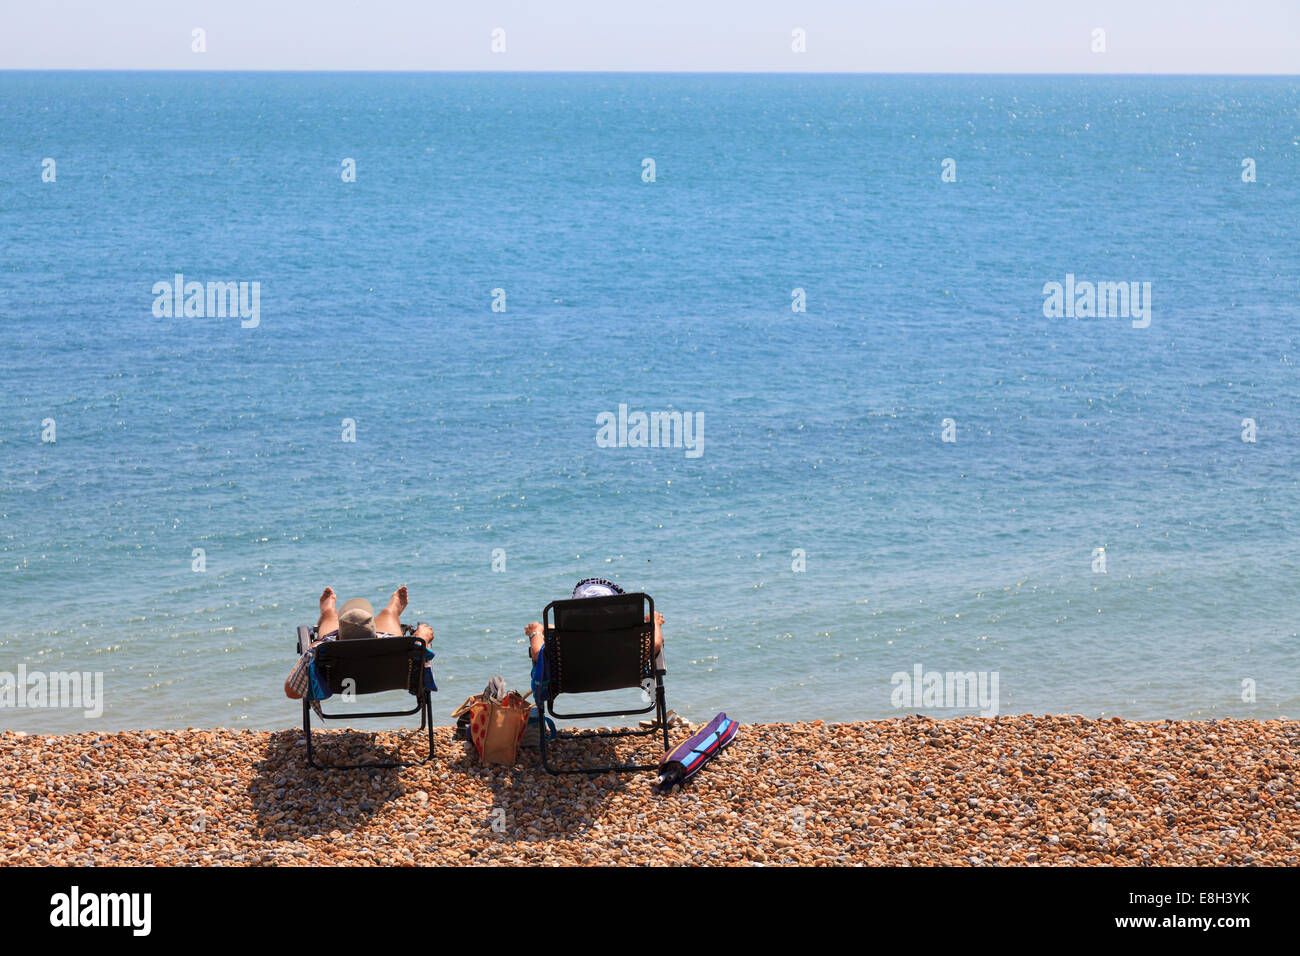 Dos personas en tumbonas de playa de guijarros por mar desde atrás. Foto de stock